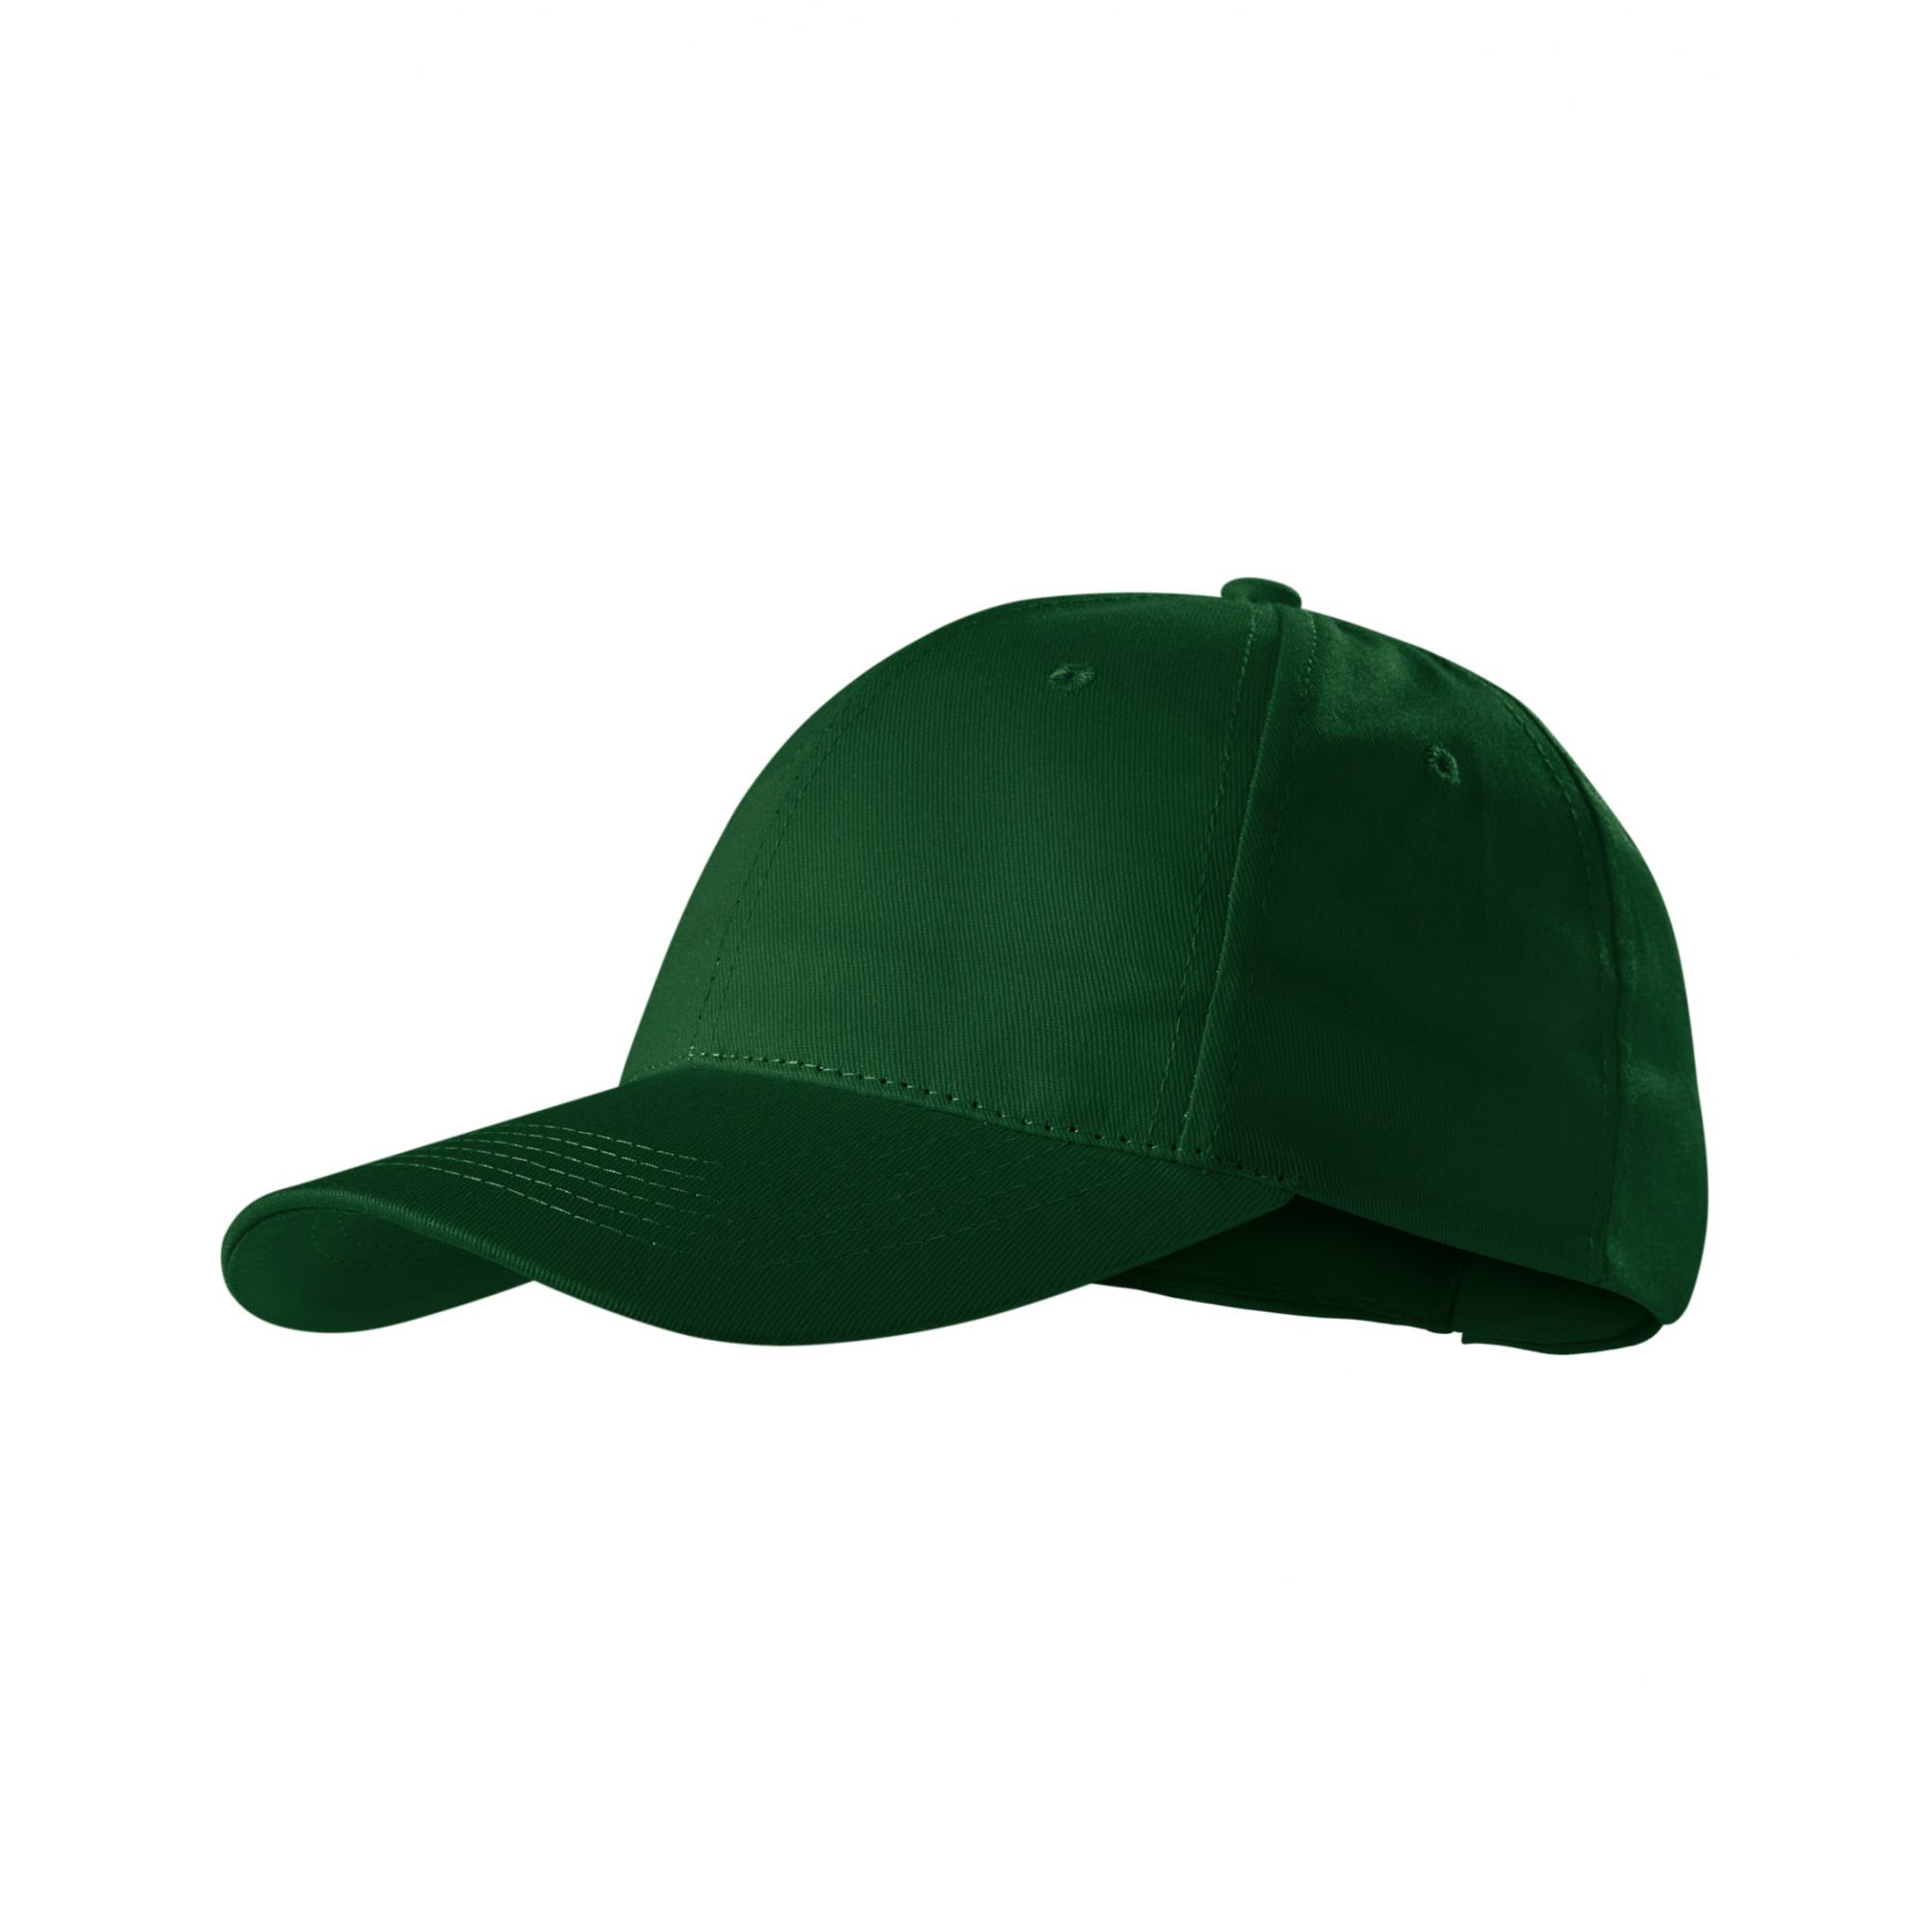 Şapcă unisex Sunshine P31 Verde sticla Marime universala